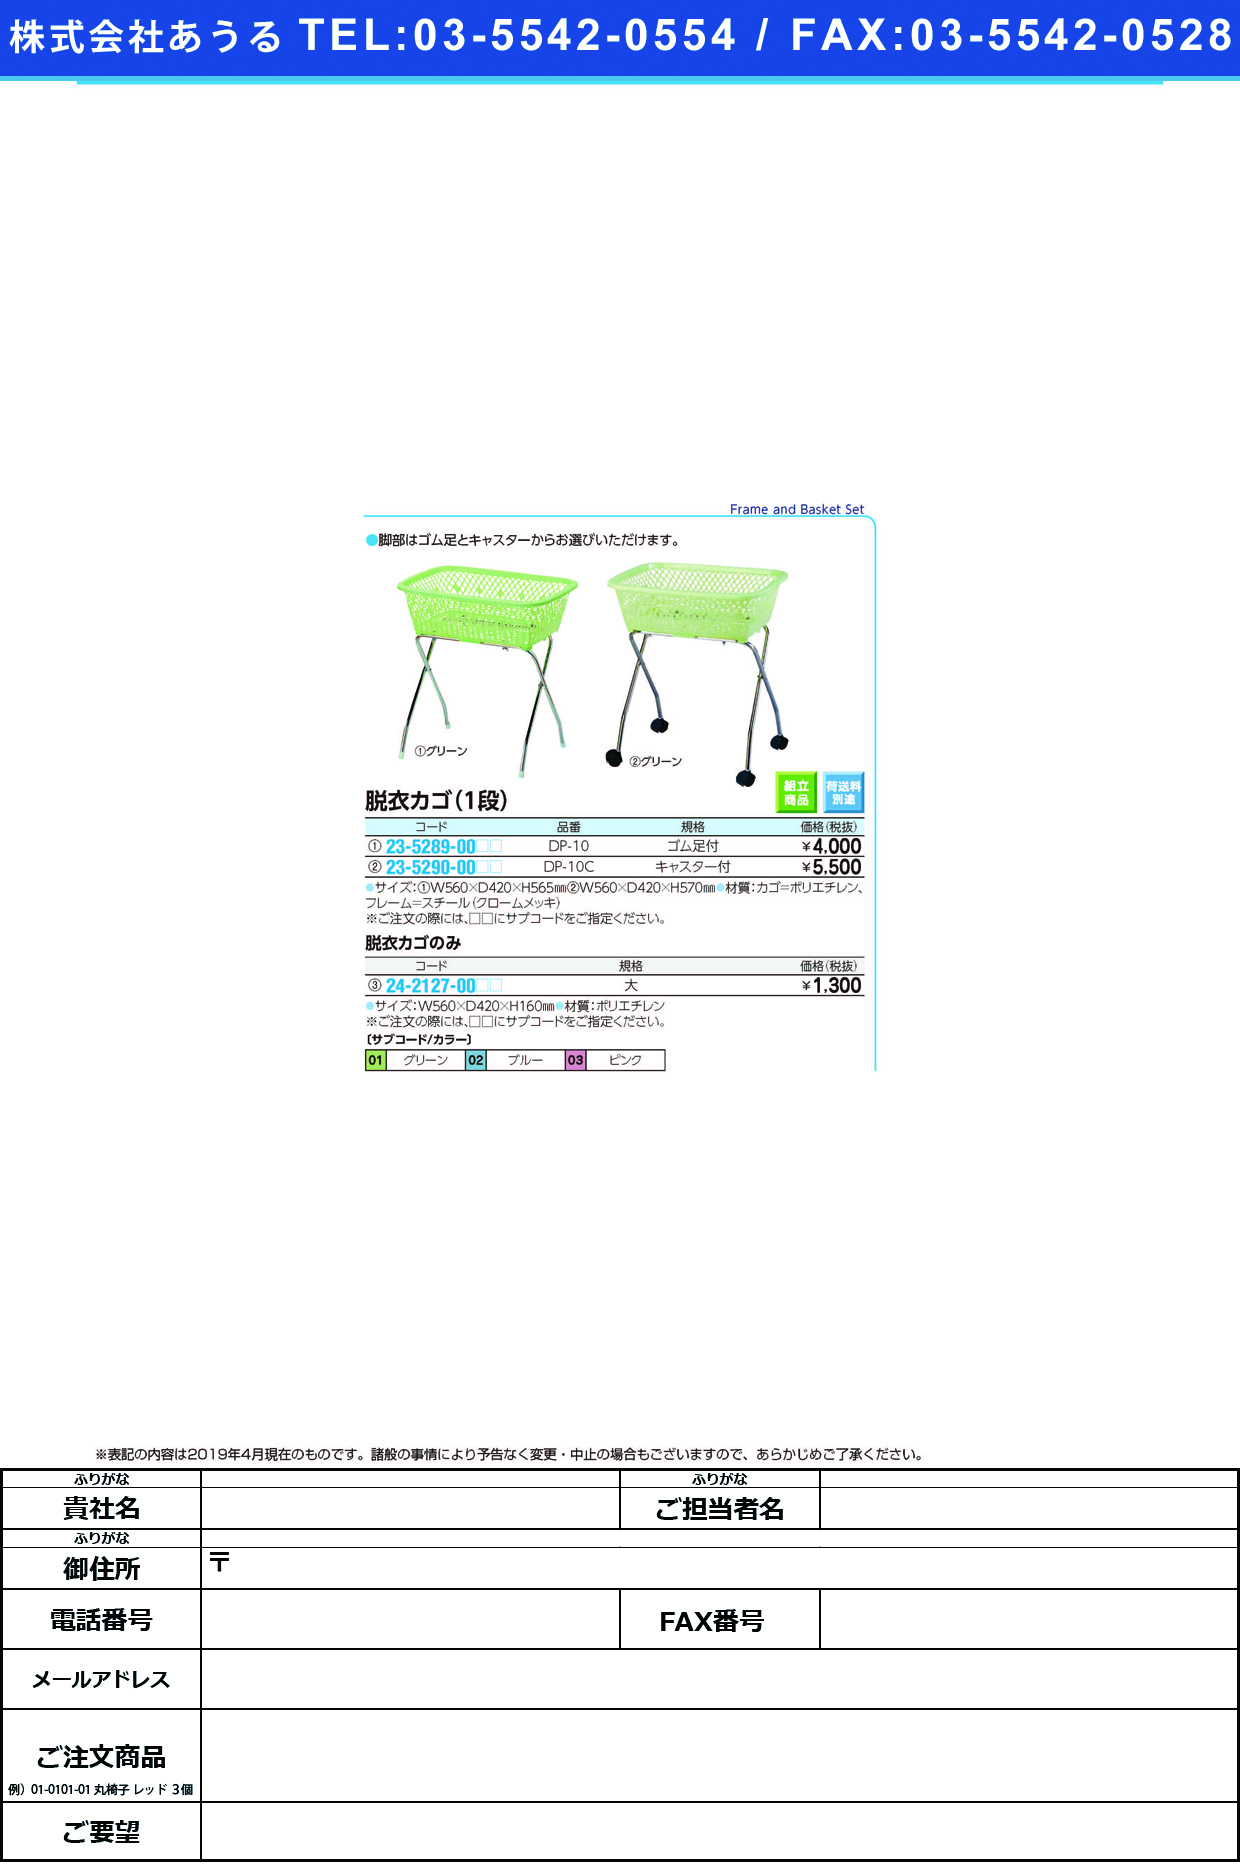 (23-5289-00)脱衣カゴ DP-10(ｺﾞﾑｱｼﾂｷ) ﾀﾞﾂｲｶｺﾞ グリーン【1台単位】【2019年カタログ商品】